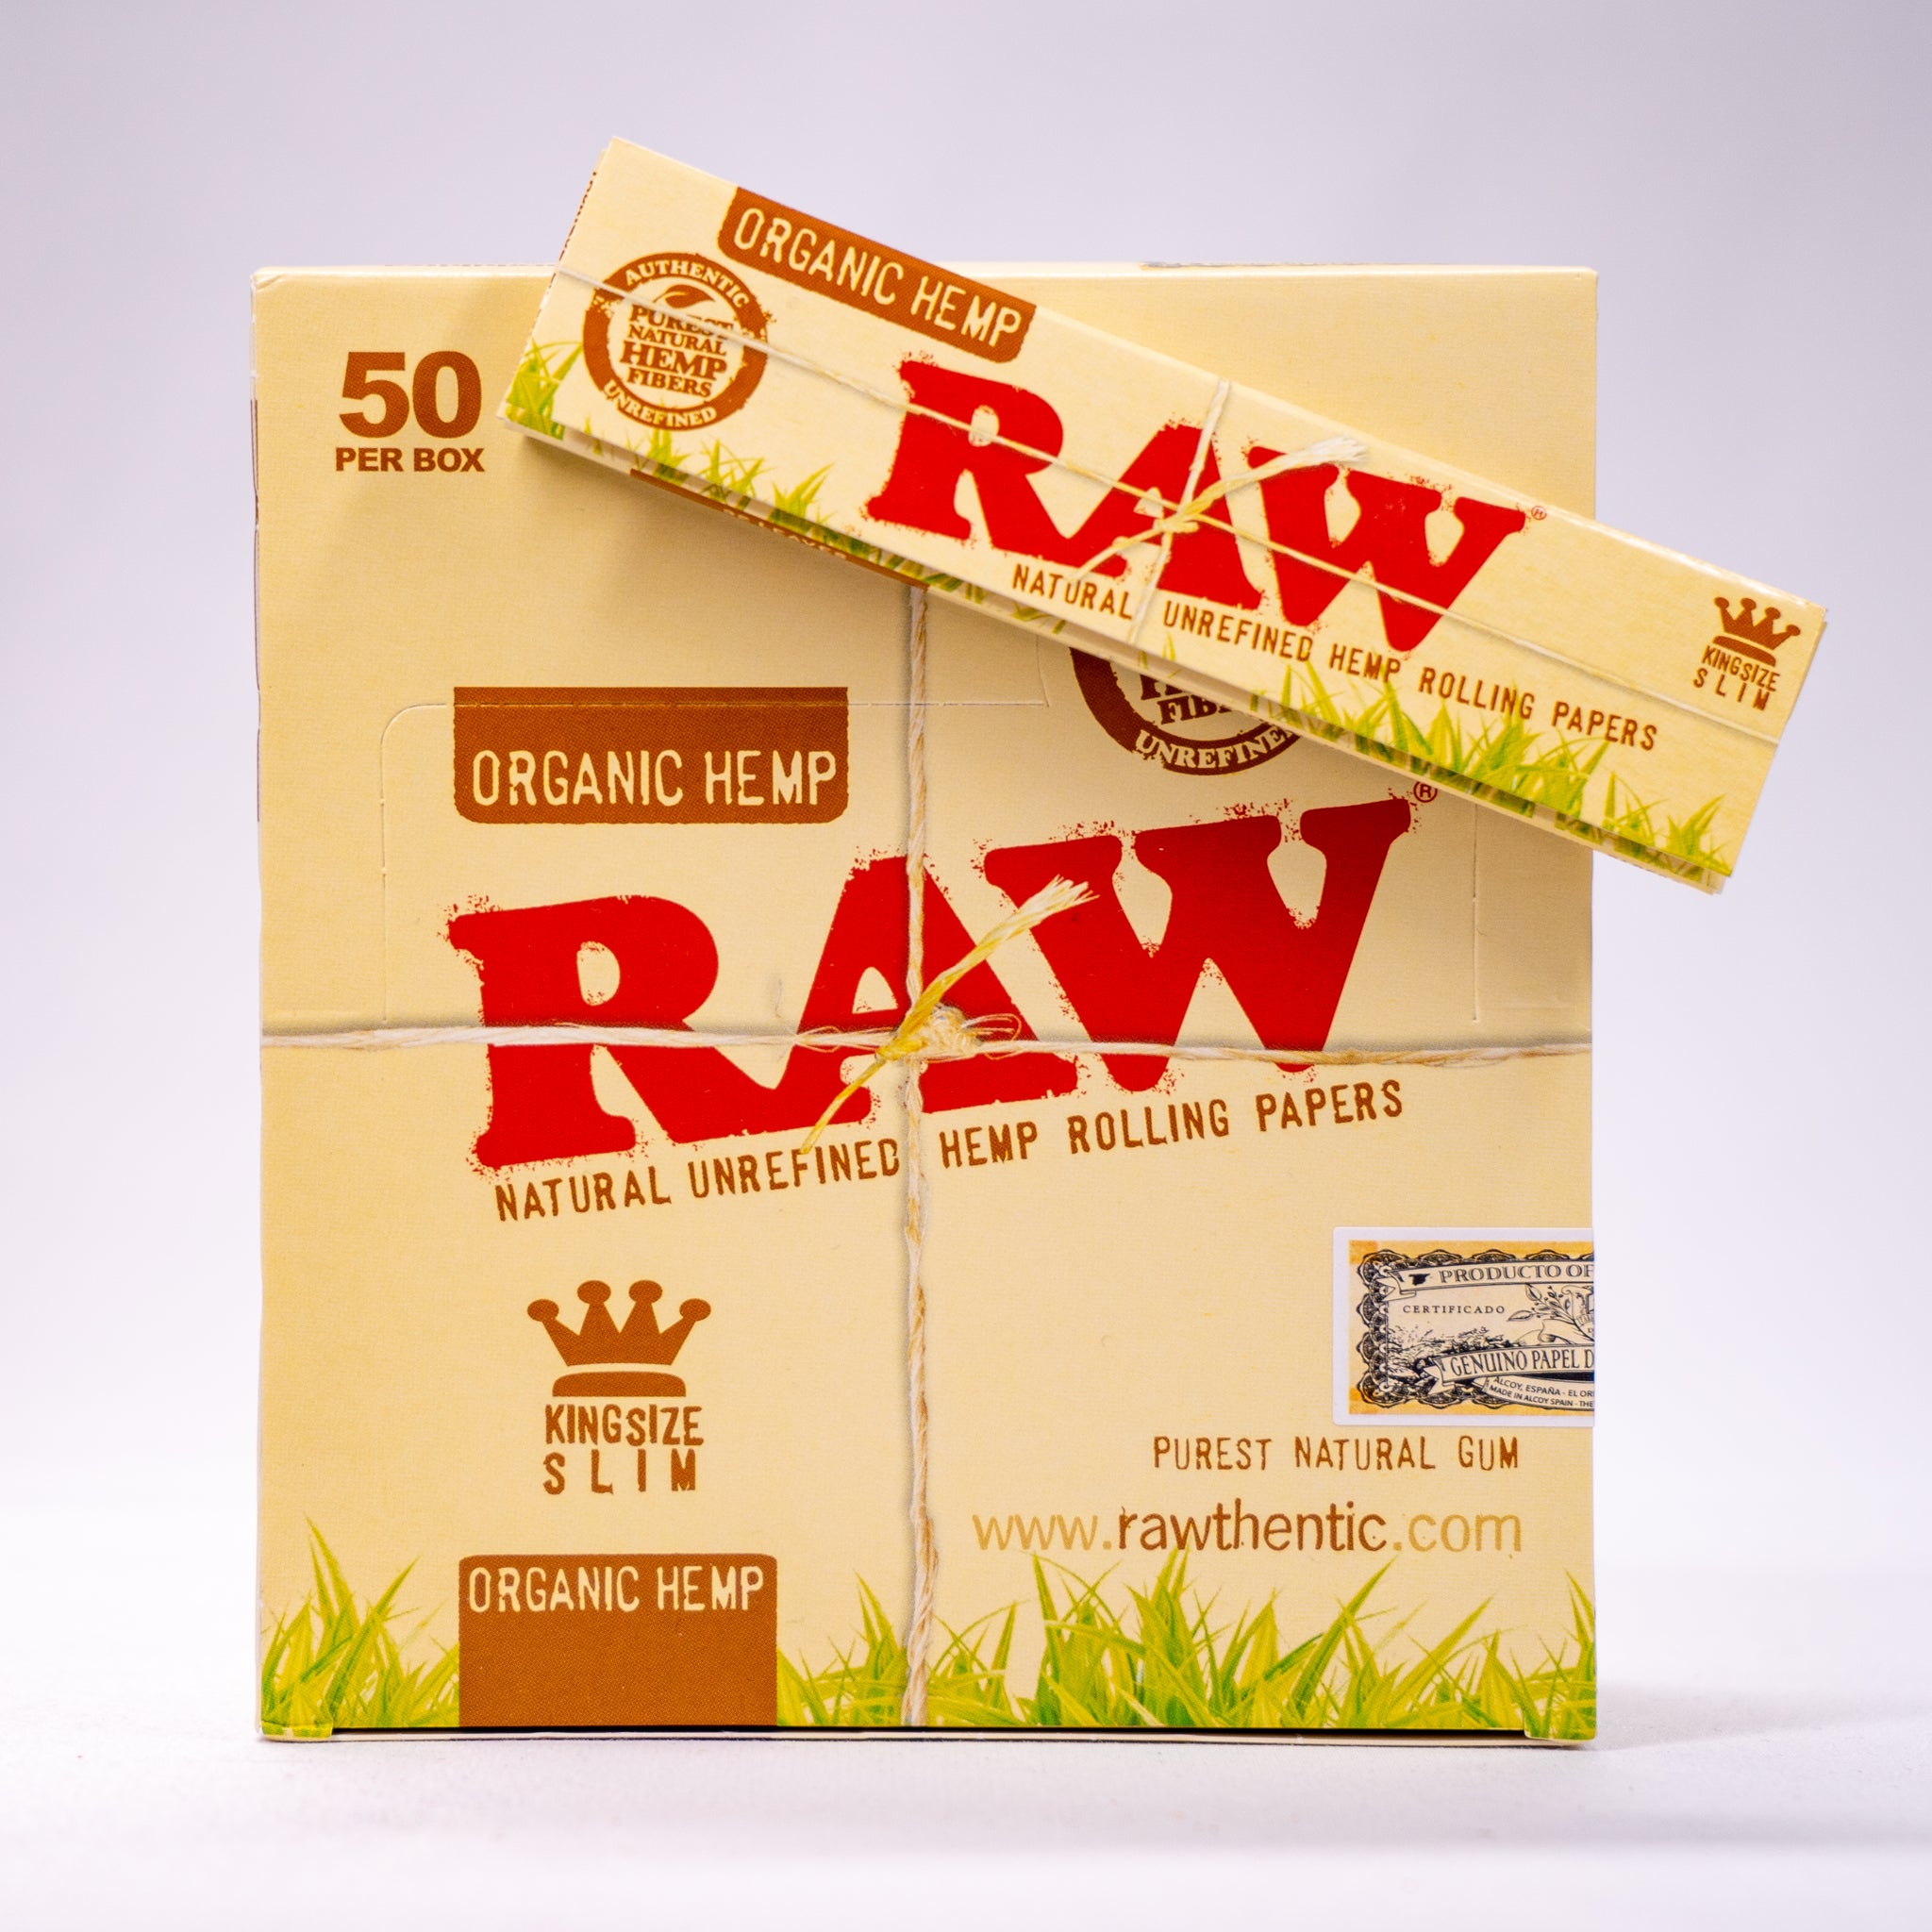 PAPEL RAW - Papel de liar 100% orgánico y natural